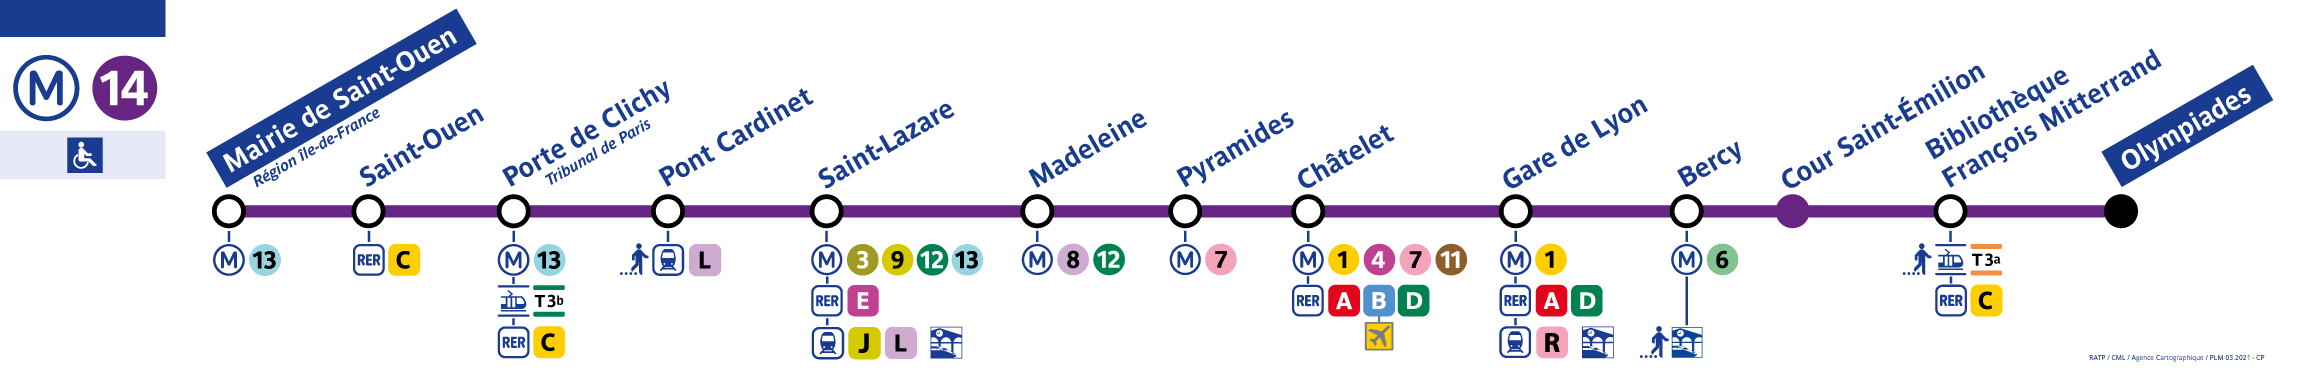 Paris Metro Line 14 Map - Paris Metro Map